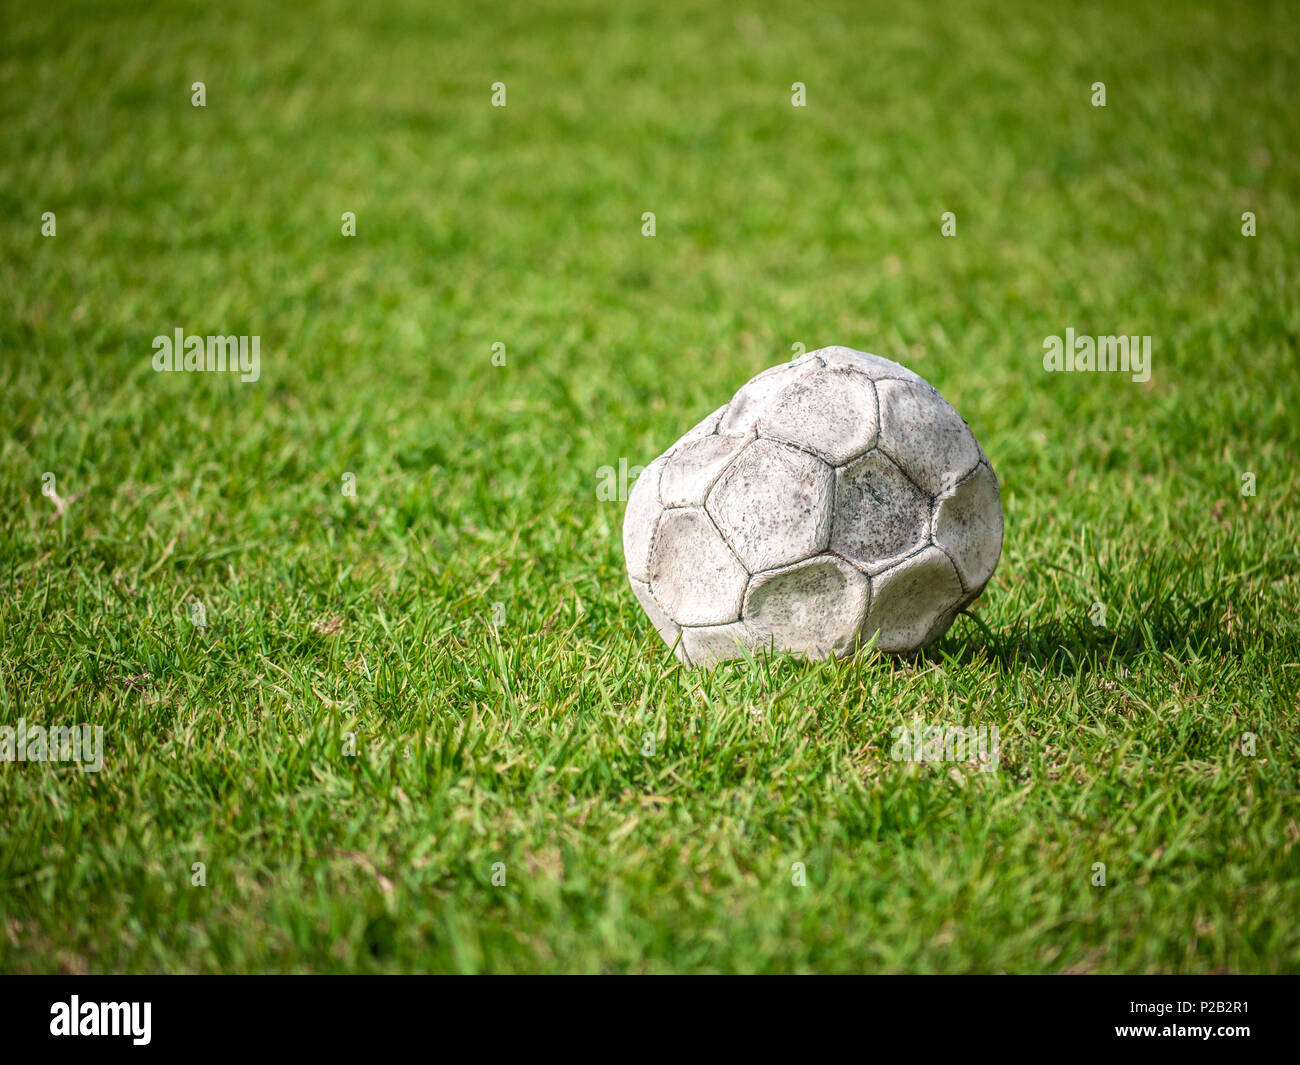 Alte leck Fußball/Fußball auf der grünen Wiese aufgegeben. Konzept der Traurigkeit, Hoffnungslosigkeit und Einsamkeit. Stockfoto